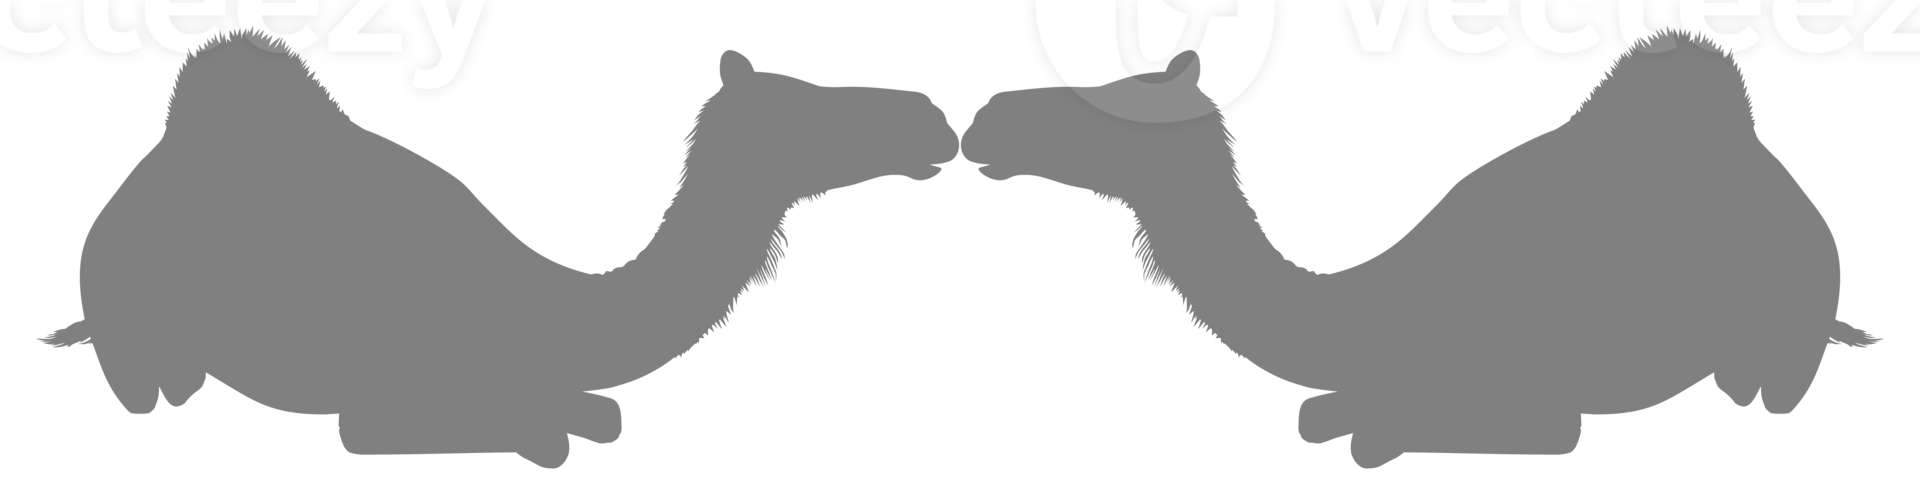 Kamelsilhouette für Logo, Piktogramm, Website, Apps, Kunstillustration oder Grafikdesignelement. PNG-Format png